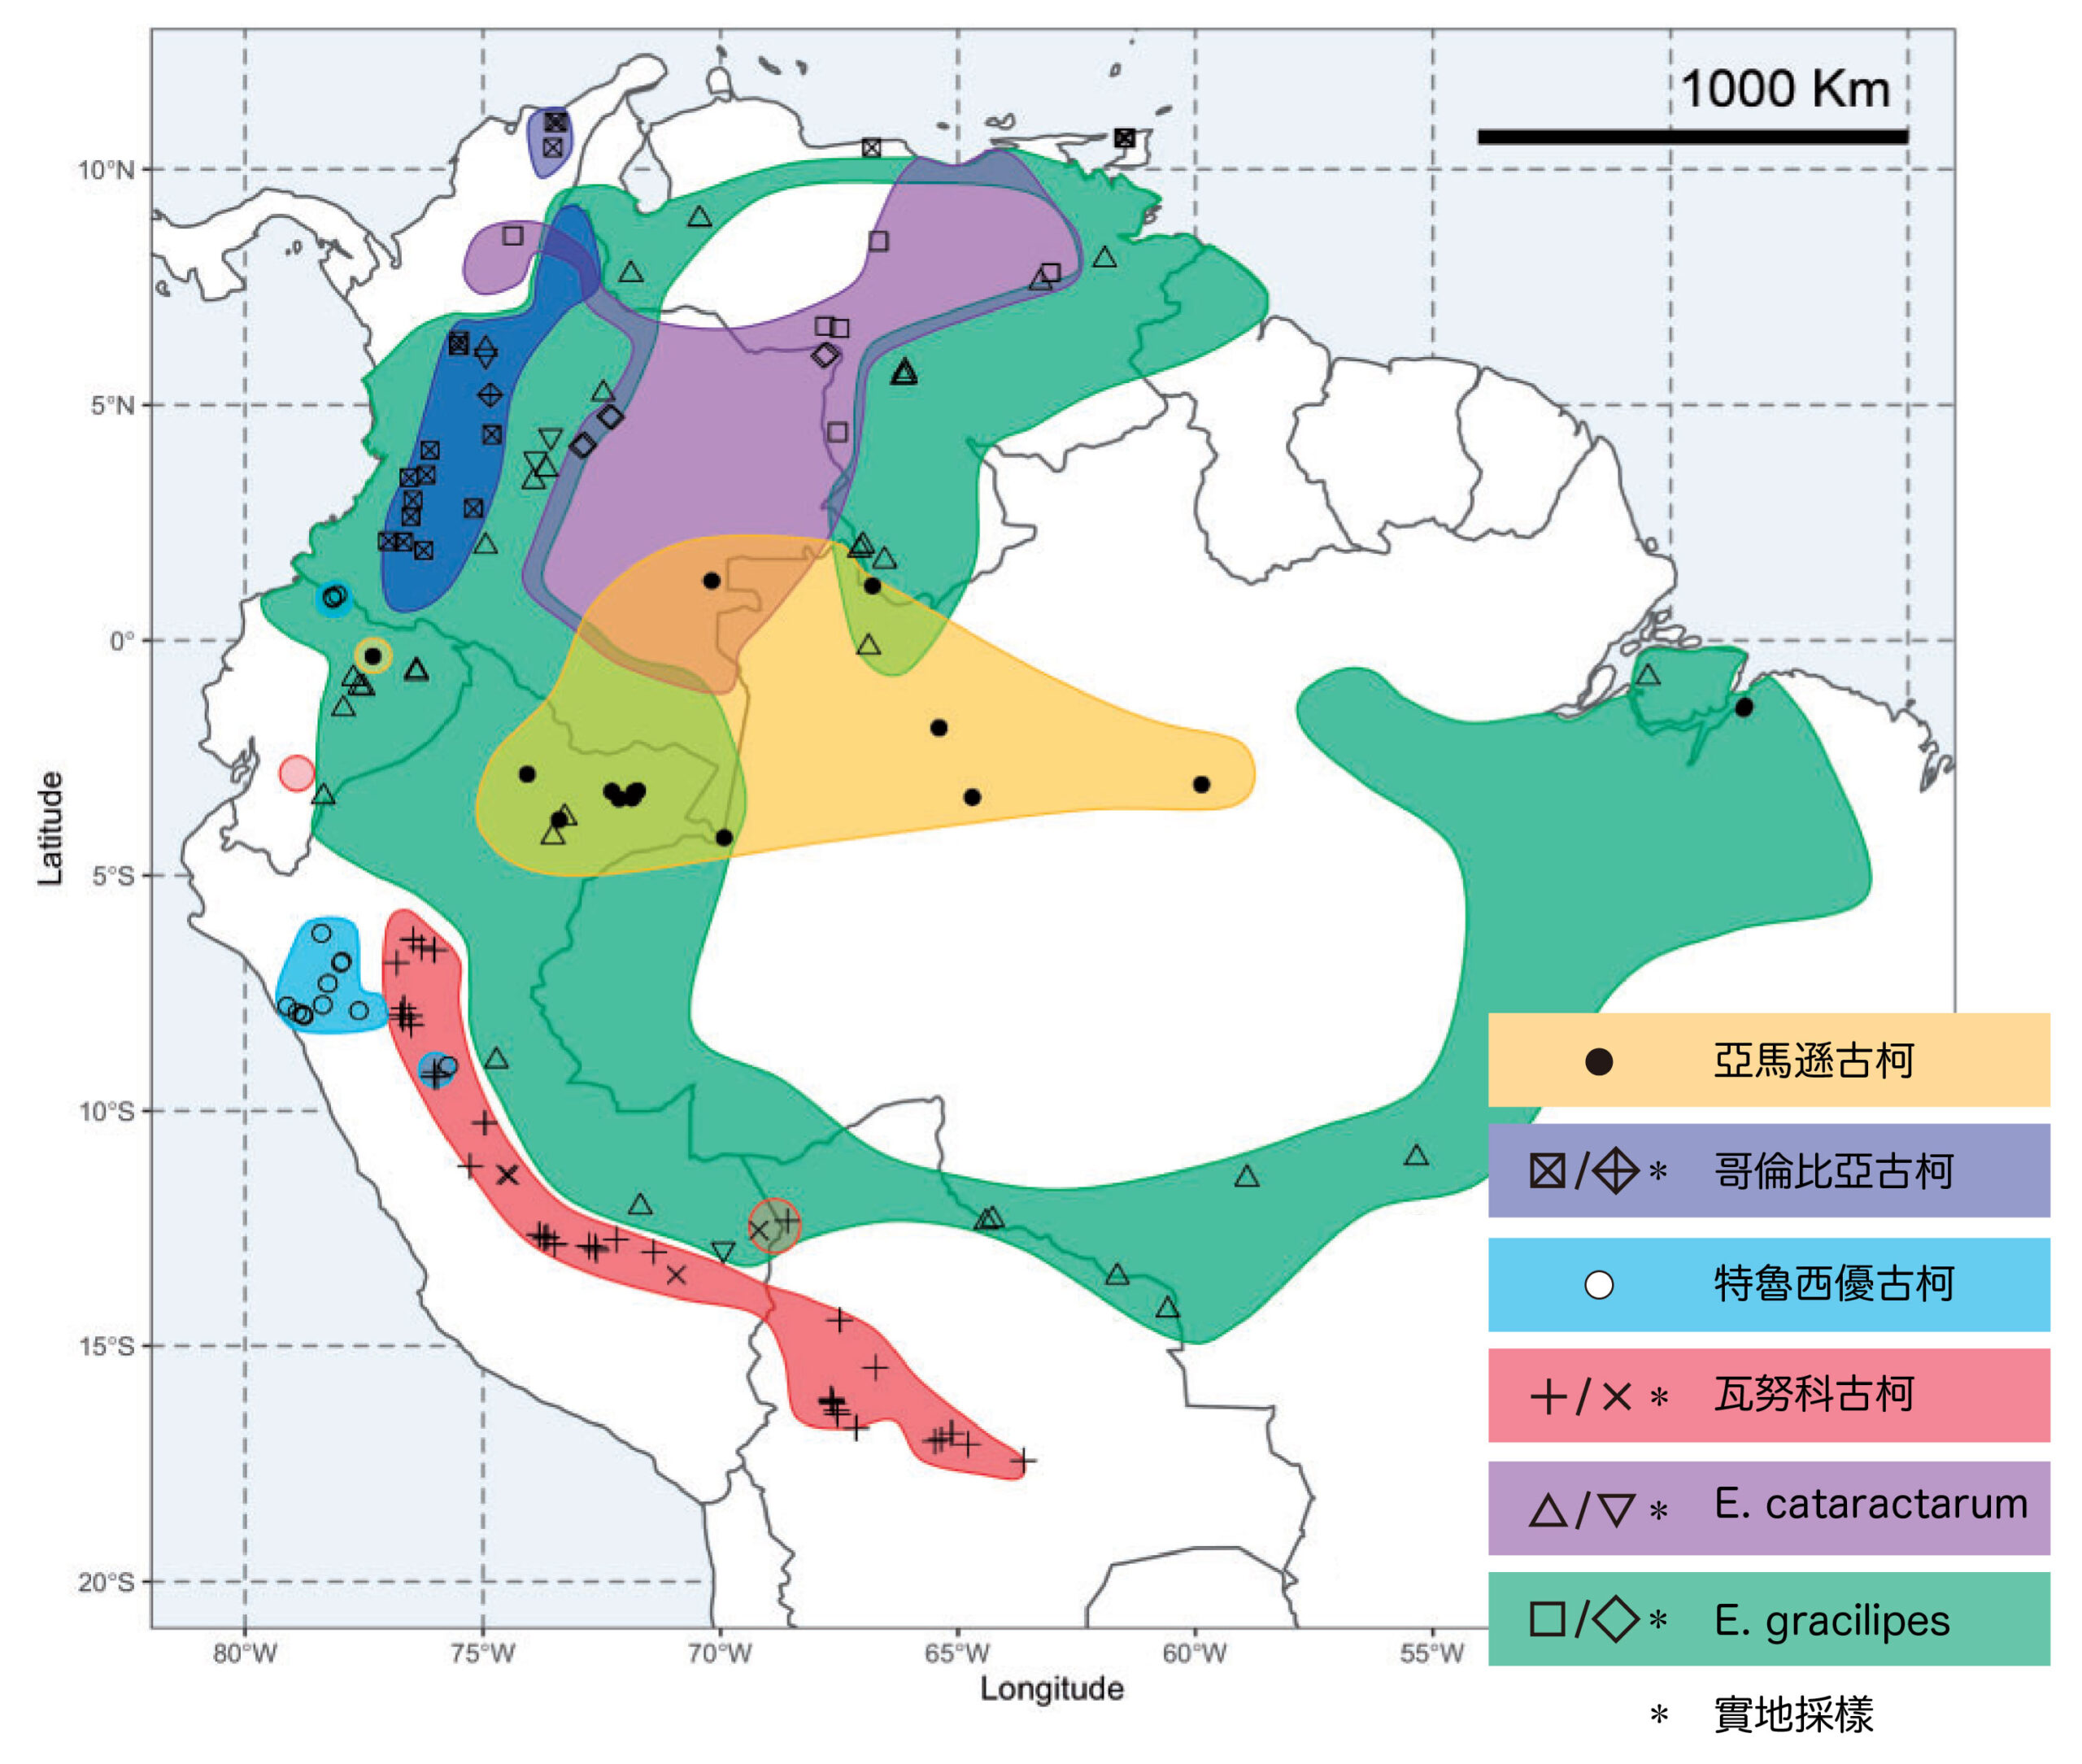 南美洲的古柯分佈圖（不記非法種植區），不同品種對應不同圖示，圖示位置即館藏樣本的紀錄地點，而有標星號的圖示則是少數實地採樣的採集地點。圖中包含 4 種人工種植古柯（亞馬遜古柯、哥倫比亞古柯、特魯西優古柯和瓦努科古柯）以及 2 種野生古柯（Erythroxylum cataractarum、Erythroxylum gracilipes）。圖│研之有物（資料來源│黃仁磐）